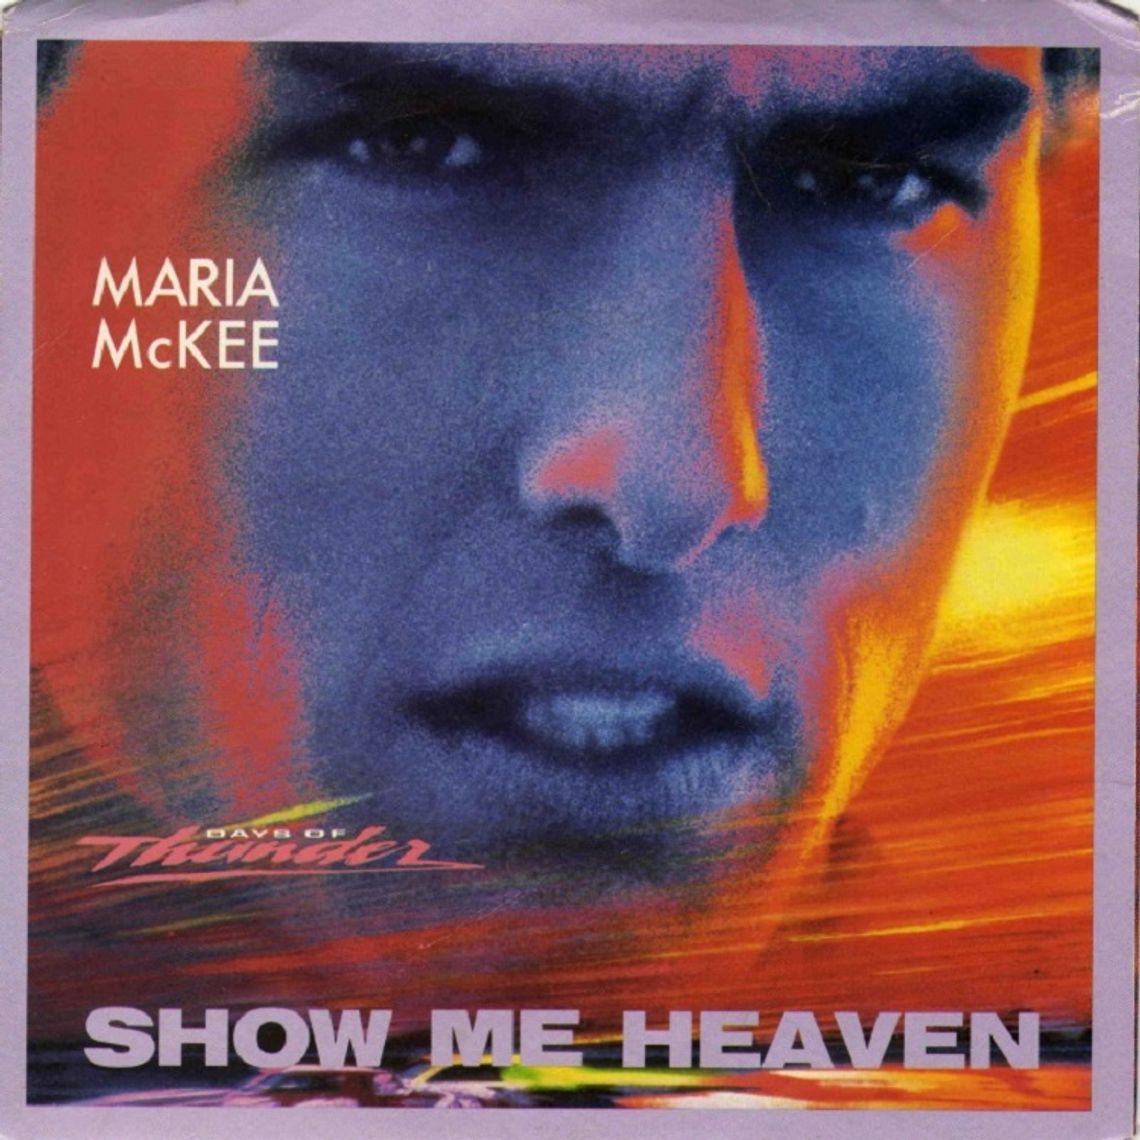 Maria Mc Kee "Show me heaven"